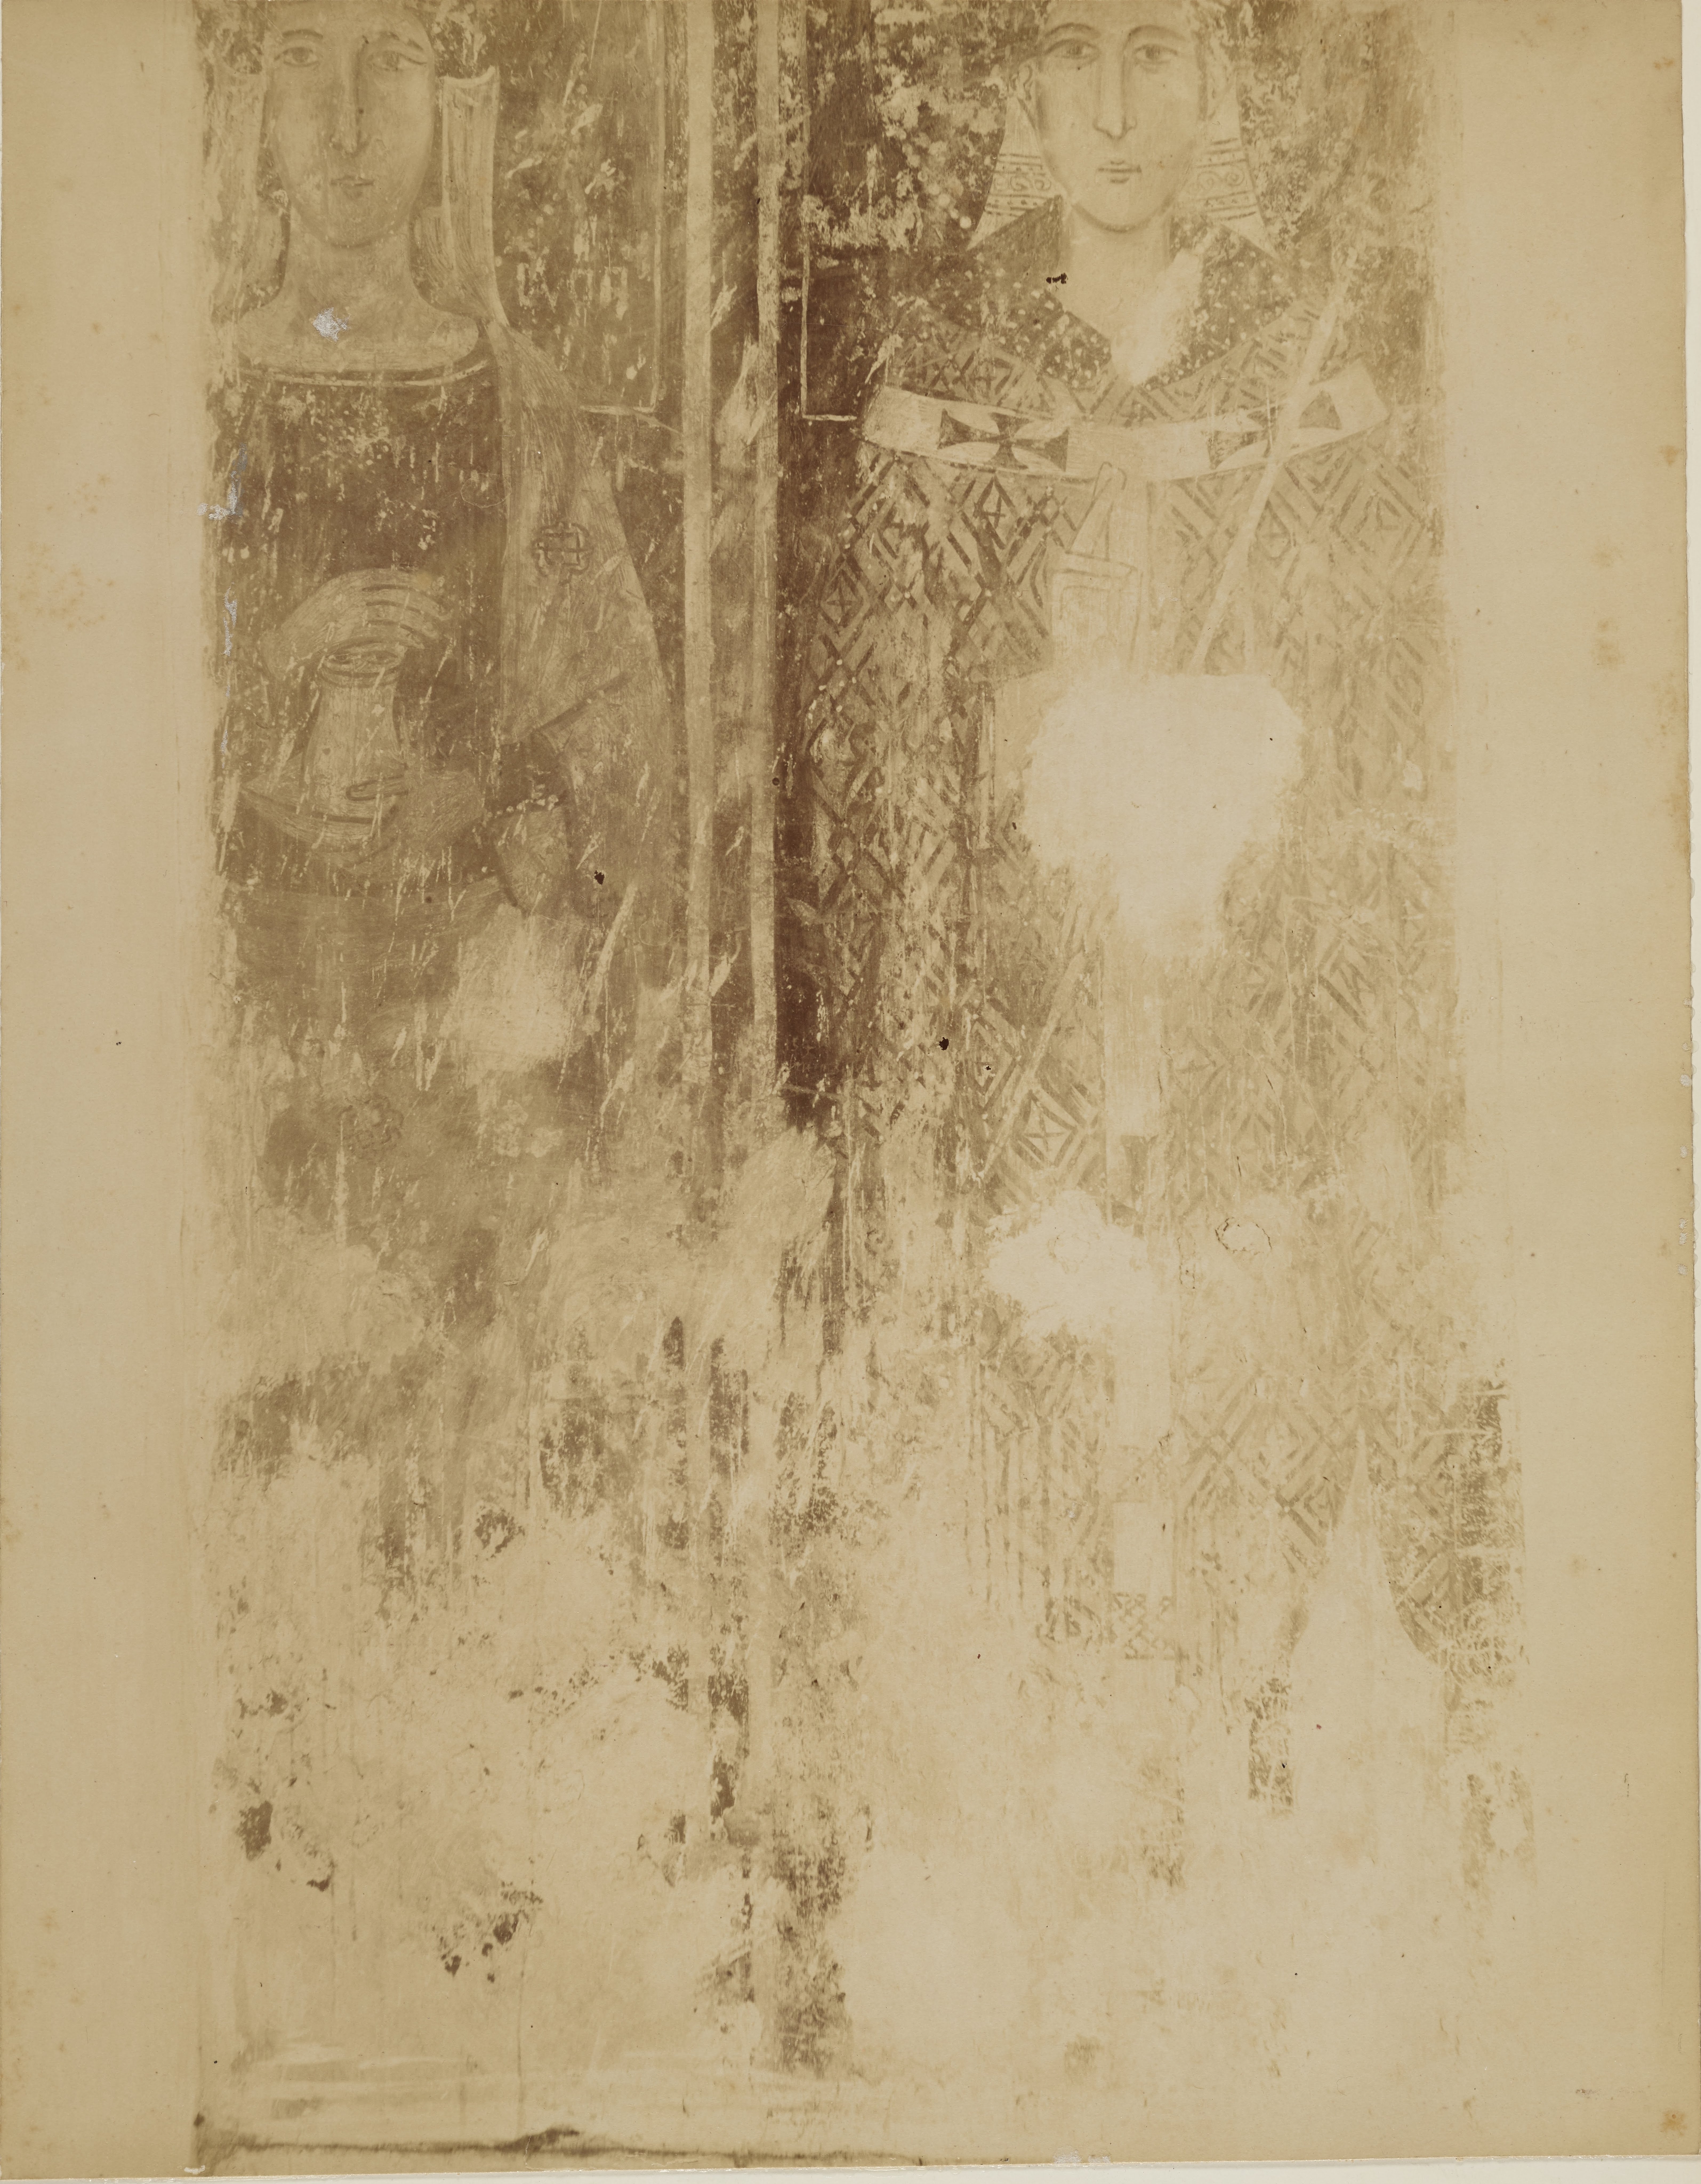 Fotografo non identificato, Valenzano - Chiesa di Ognissanti, interno, affreschi, 1876-1900, albumina/carta, MPI6074750